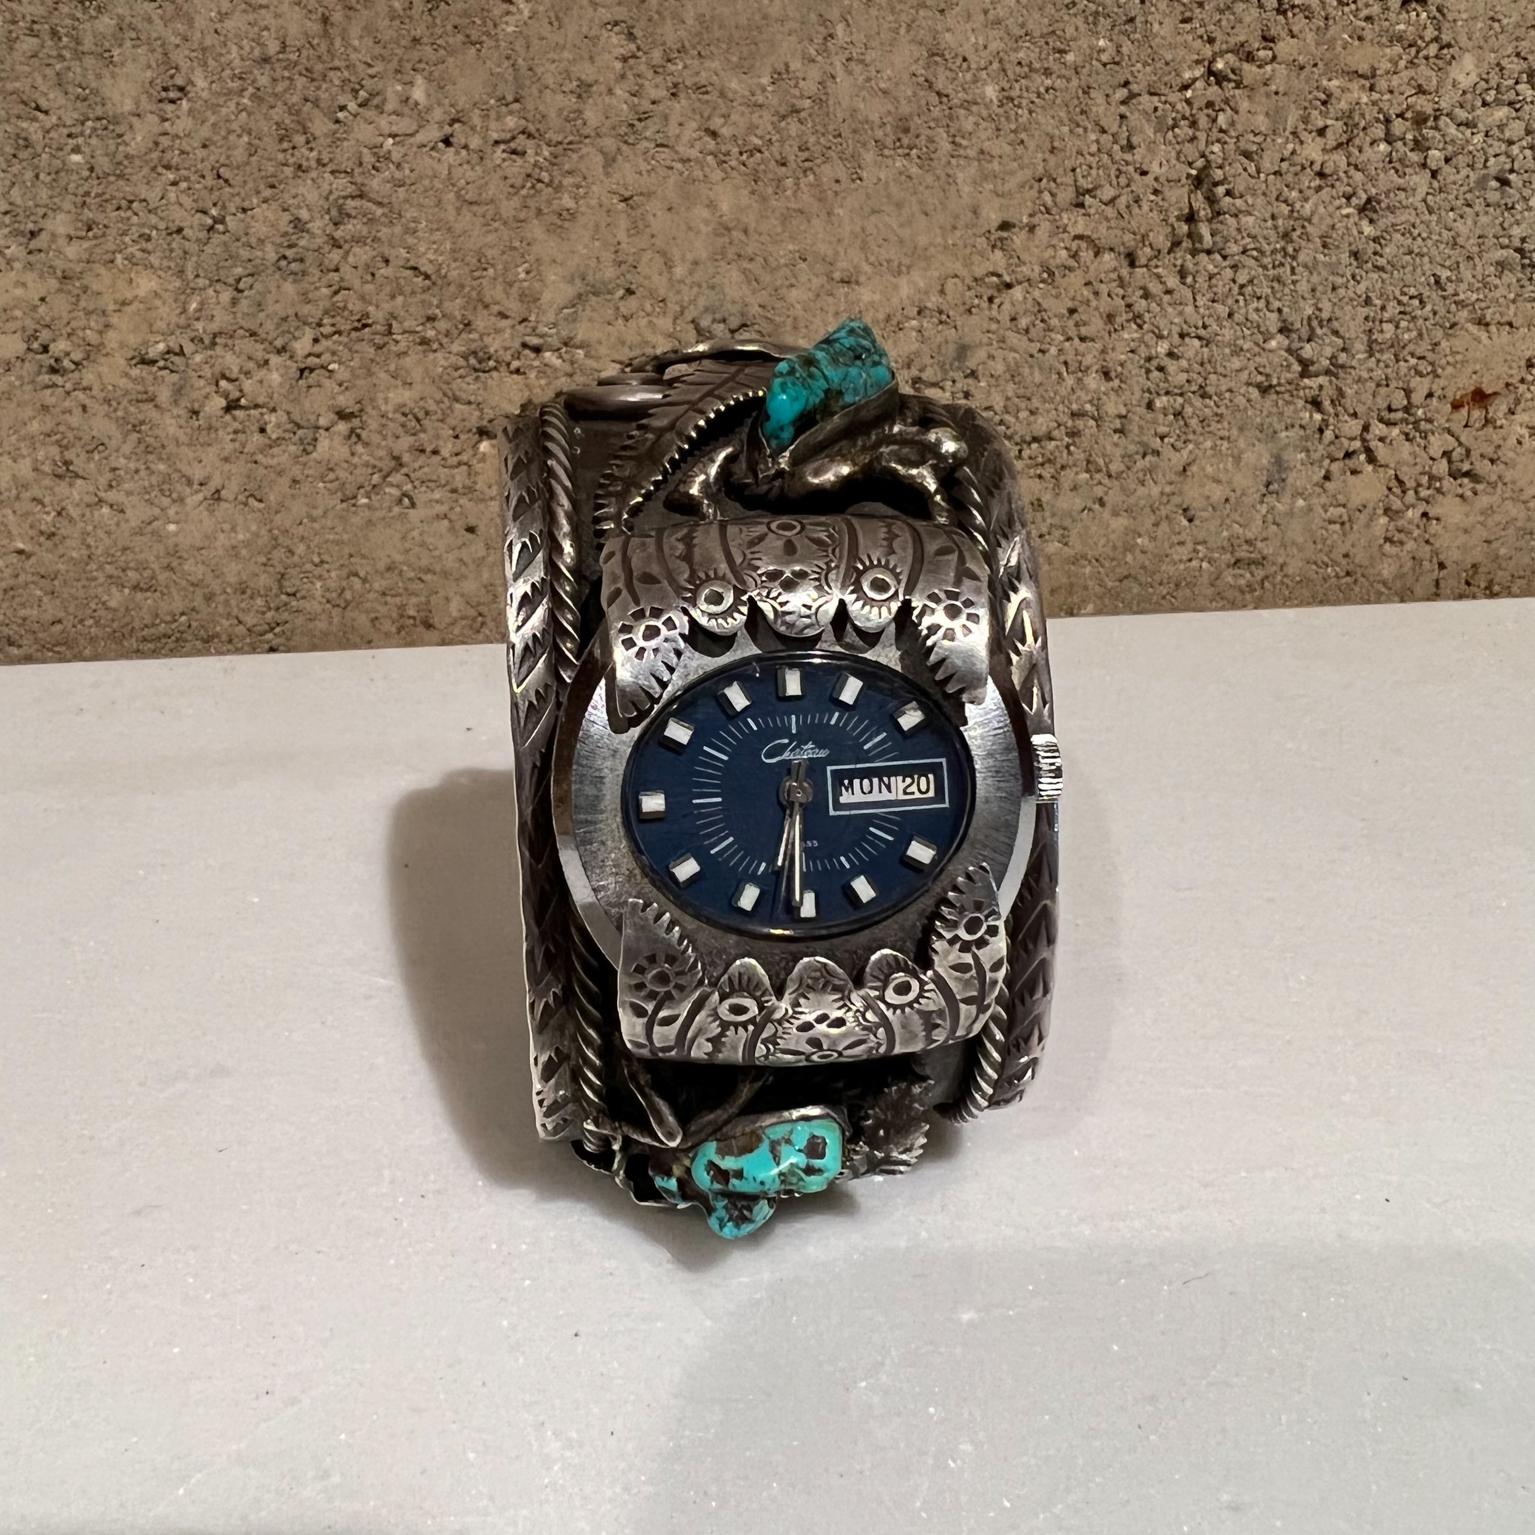 1970er Navajo Silber und Stein dekorative Manschette Armband Watch Band
Maße: 2,38 hoch x 3,38 breit 1,75 tief
Gebrauchter Vintage-Zustand.
Alle Bilder anzeigen.
  